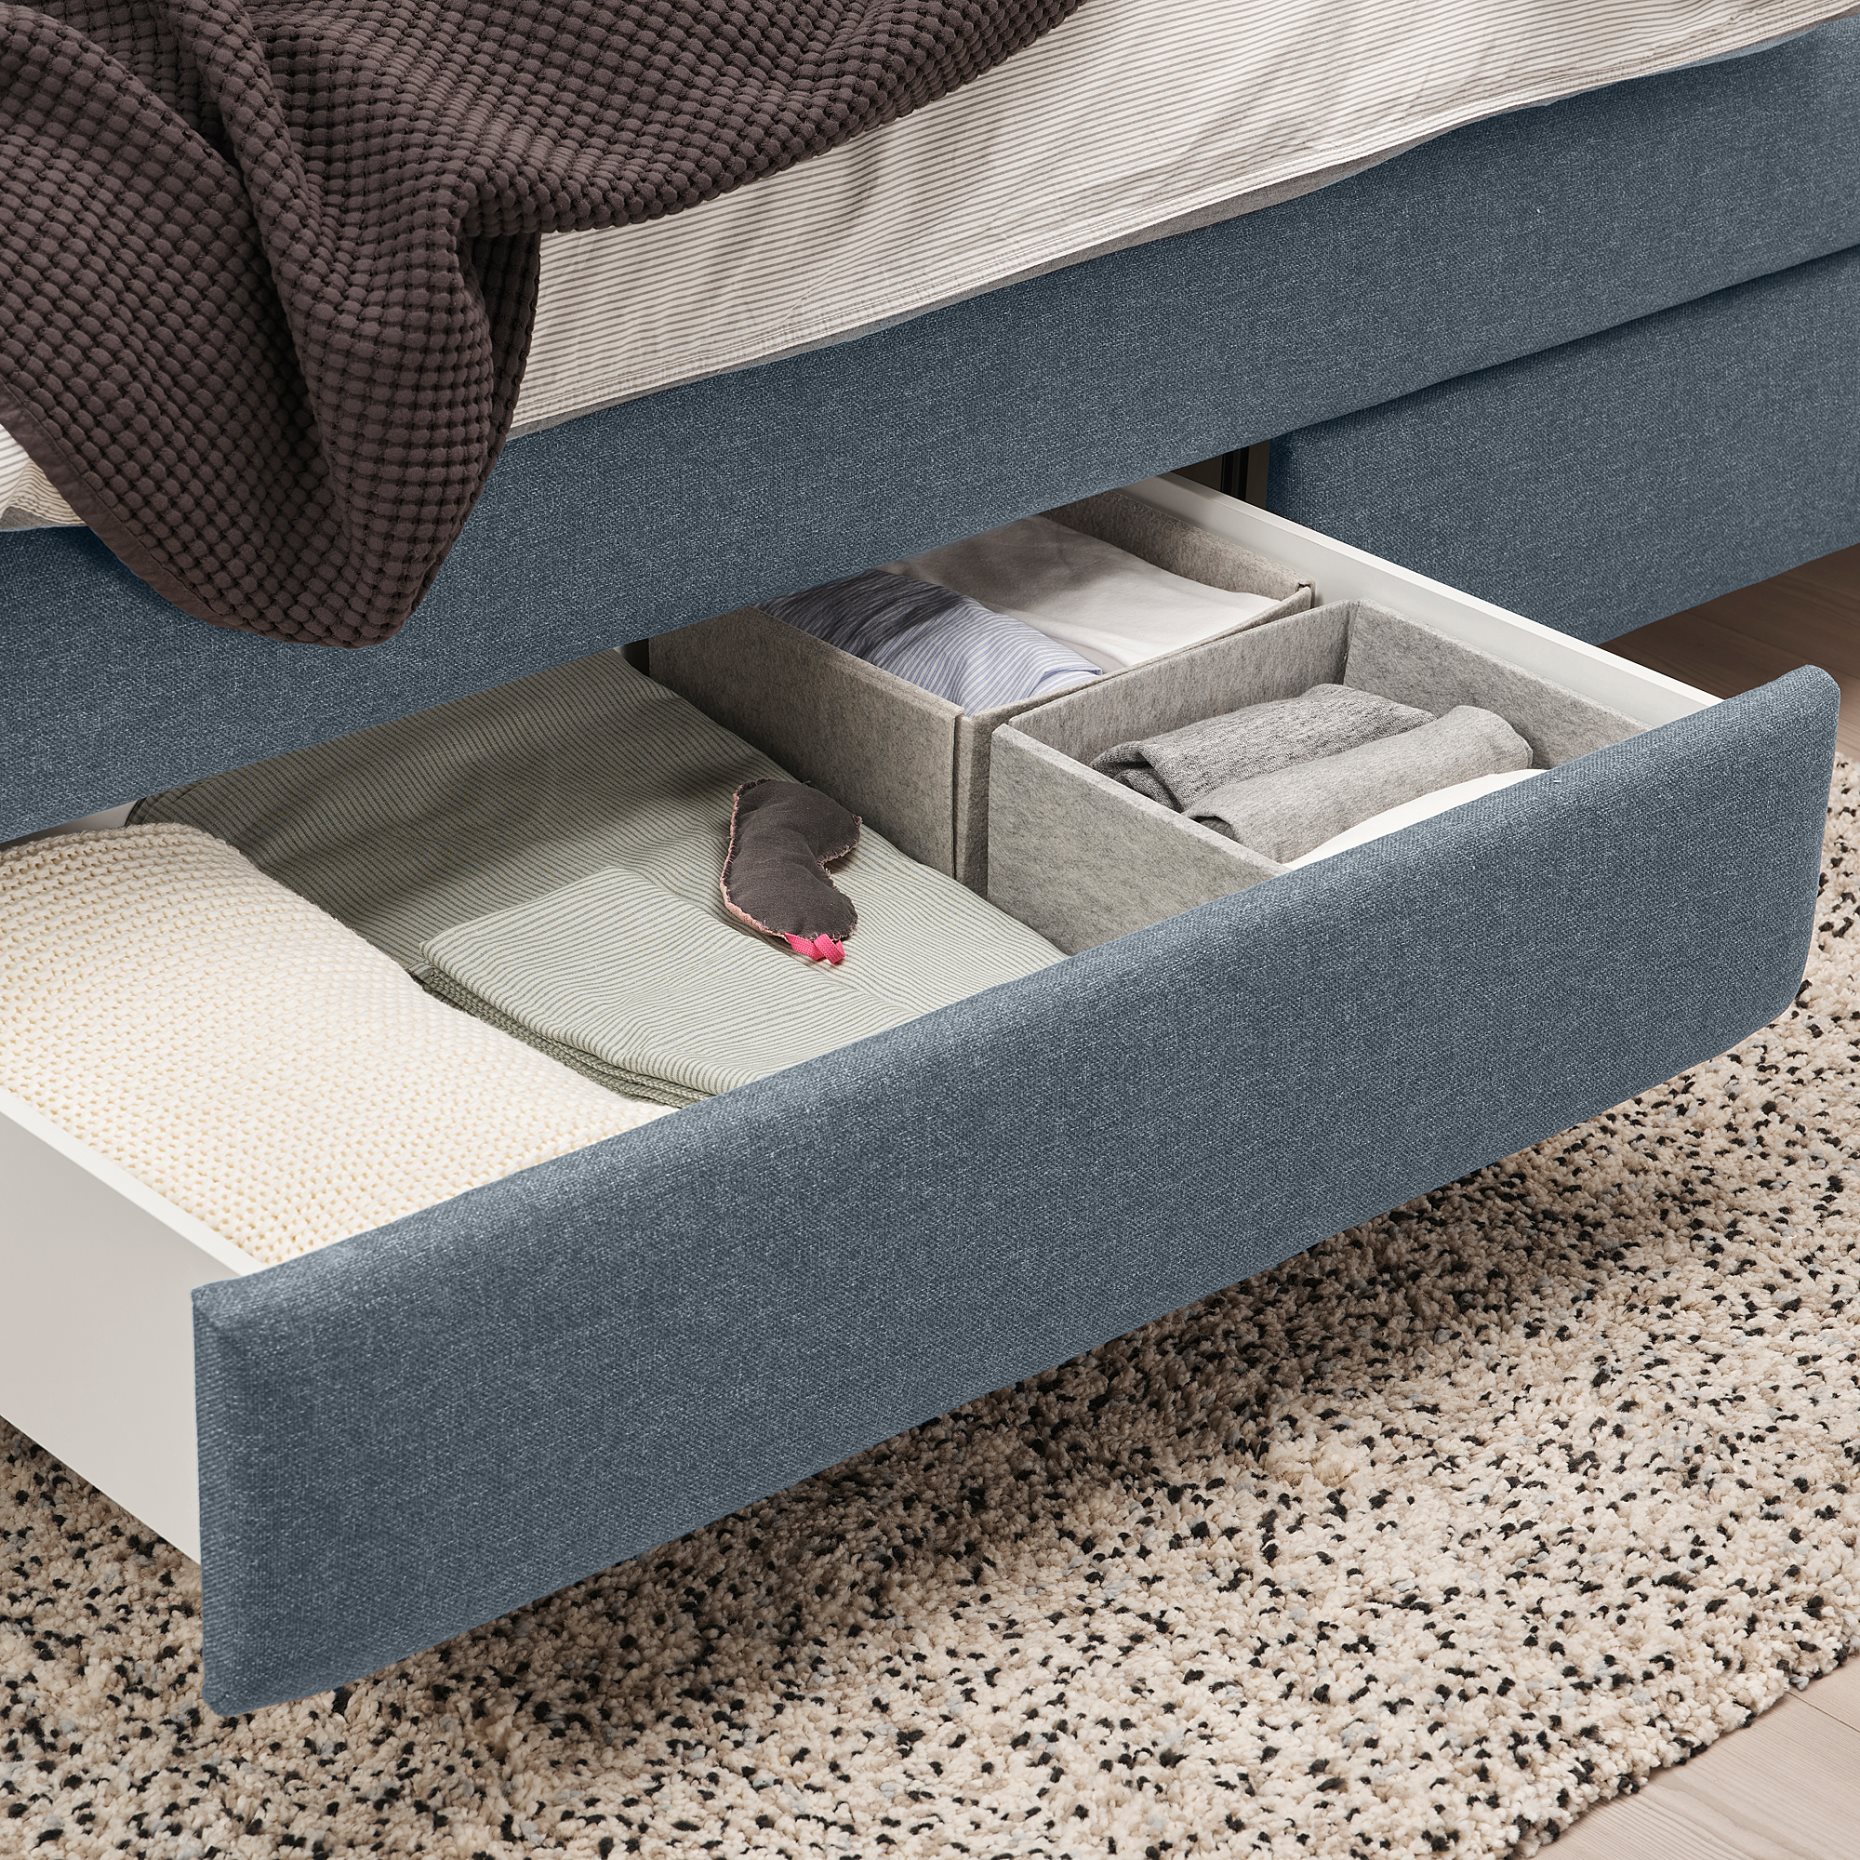 TUFJORD, upholstered storage bed, 160x200 cm, 805.209.40